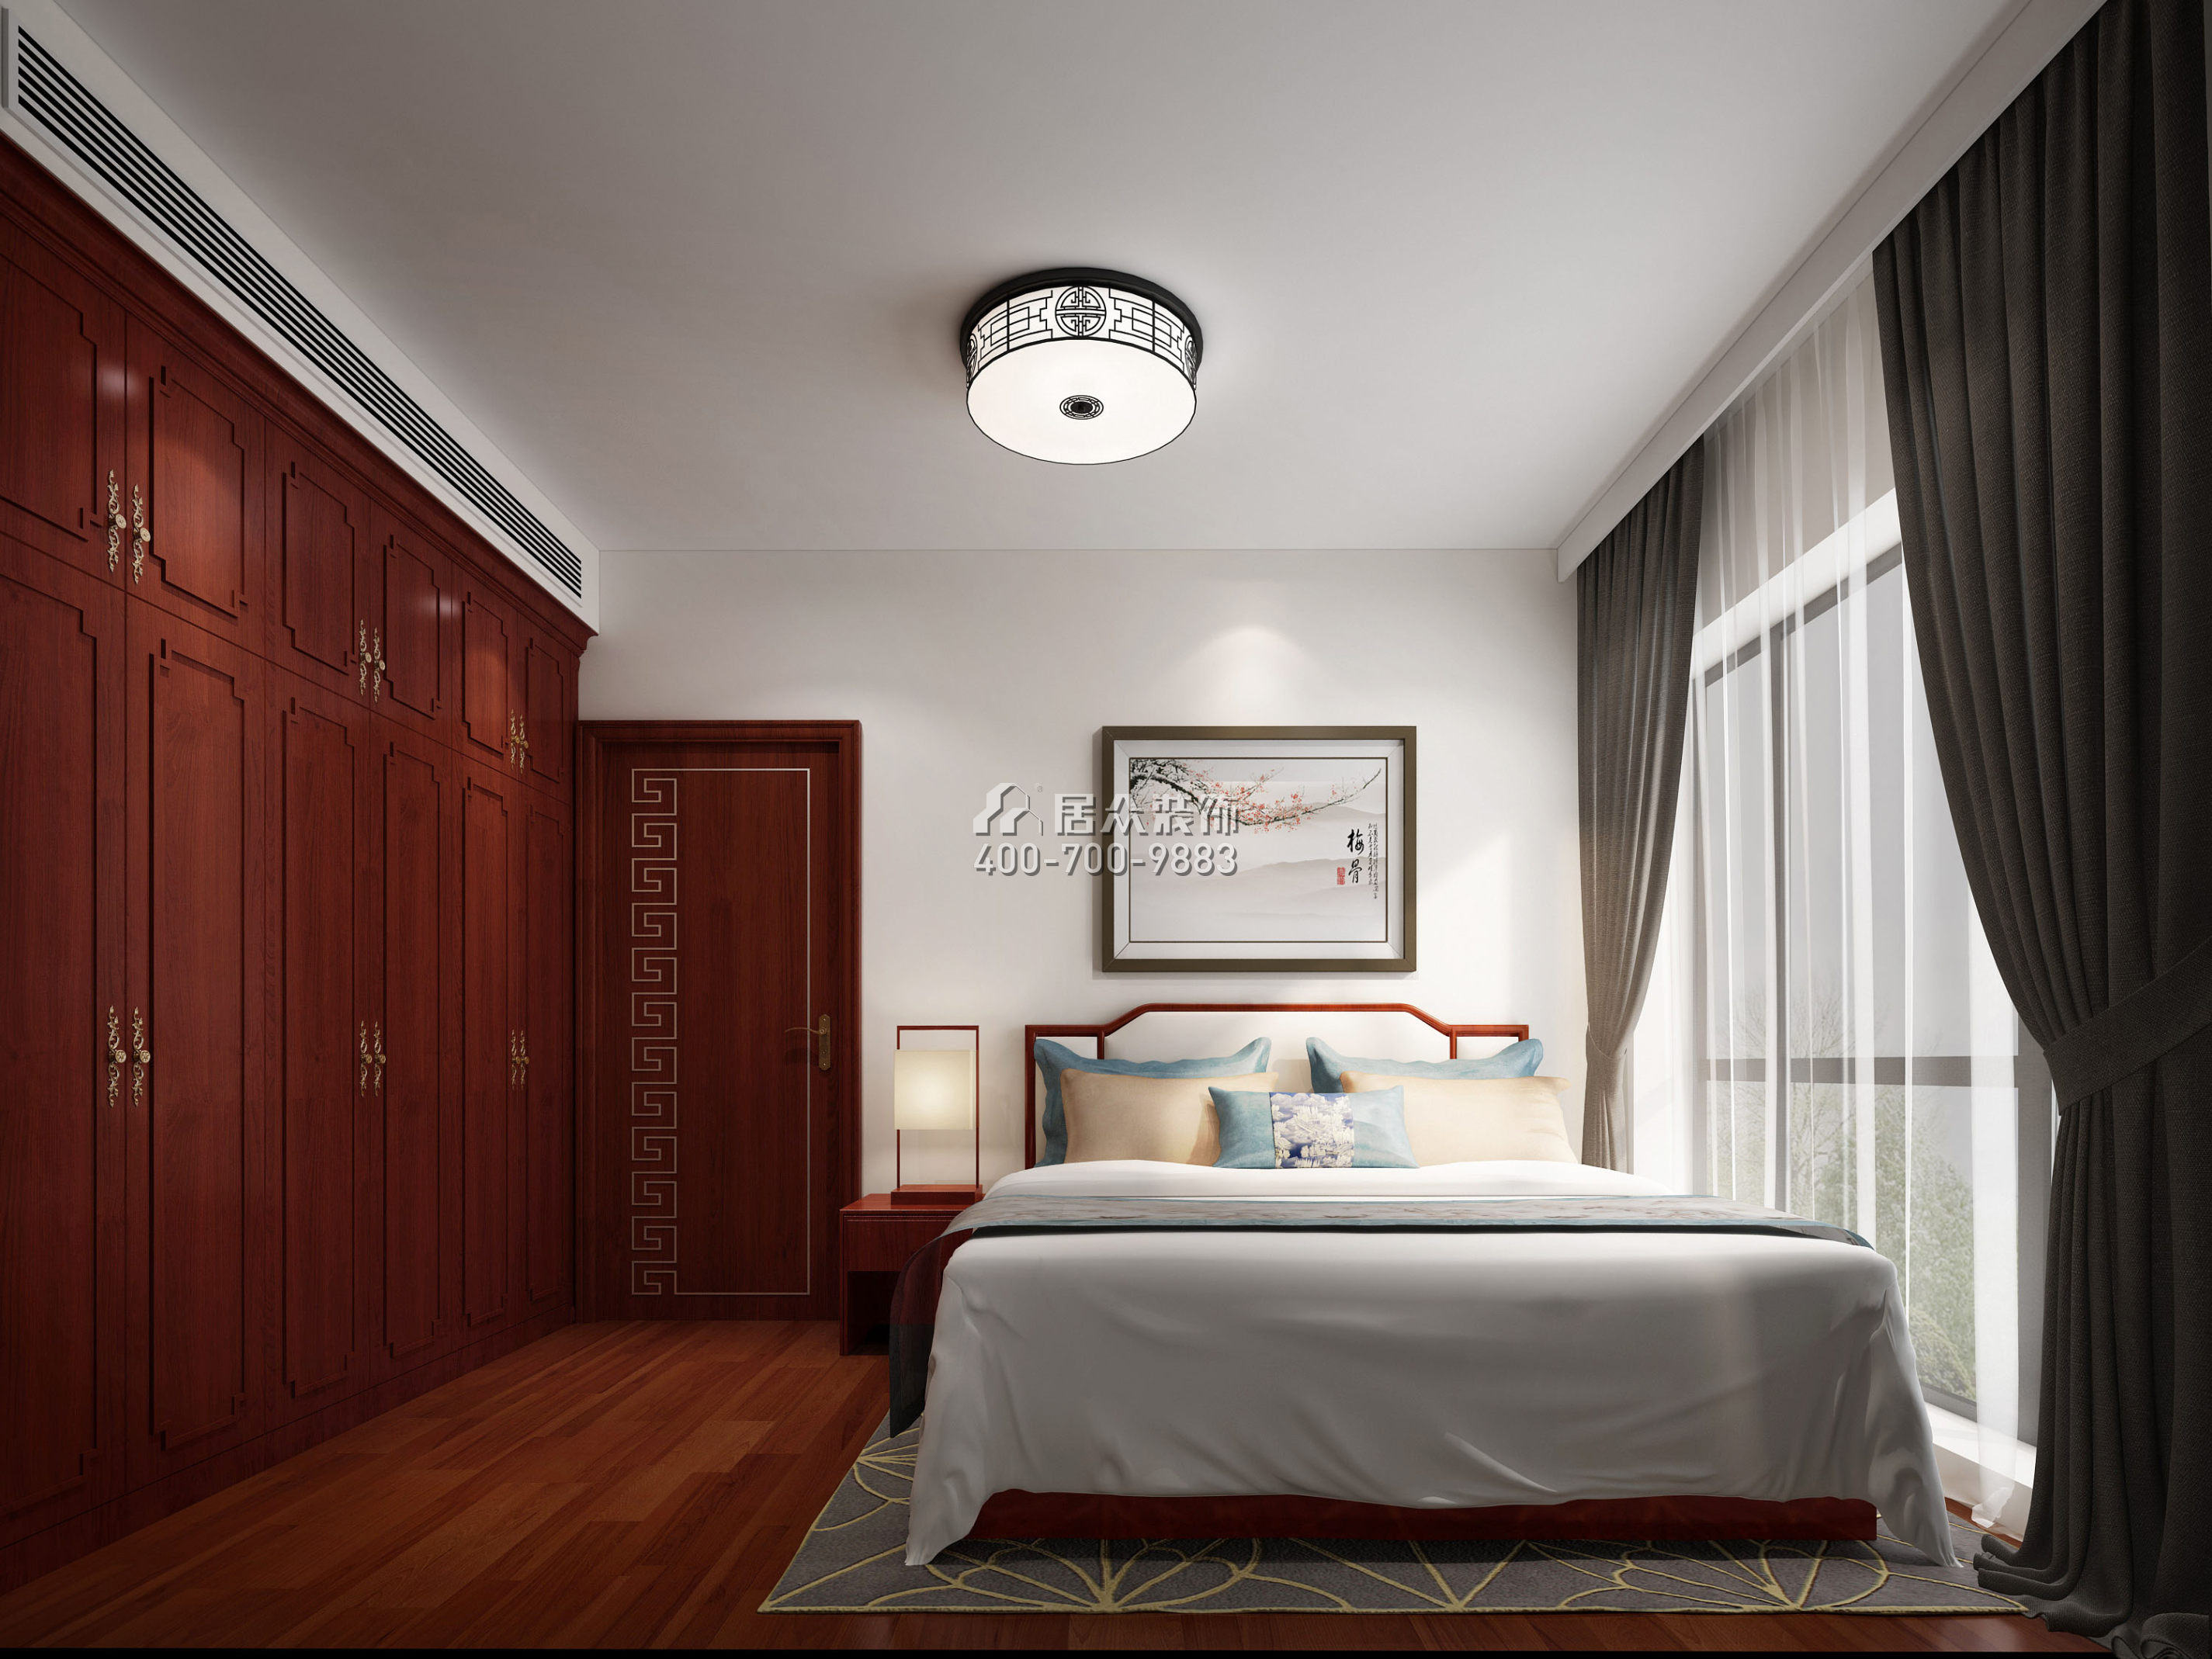 菩提园298平方米中式风格平层户型卧室装修效果图